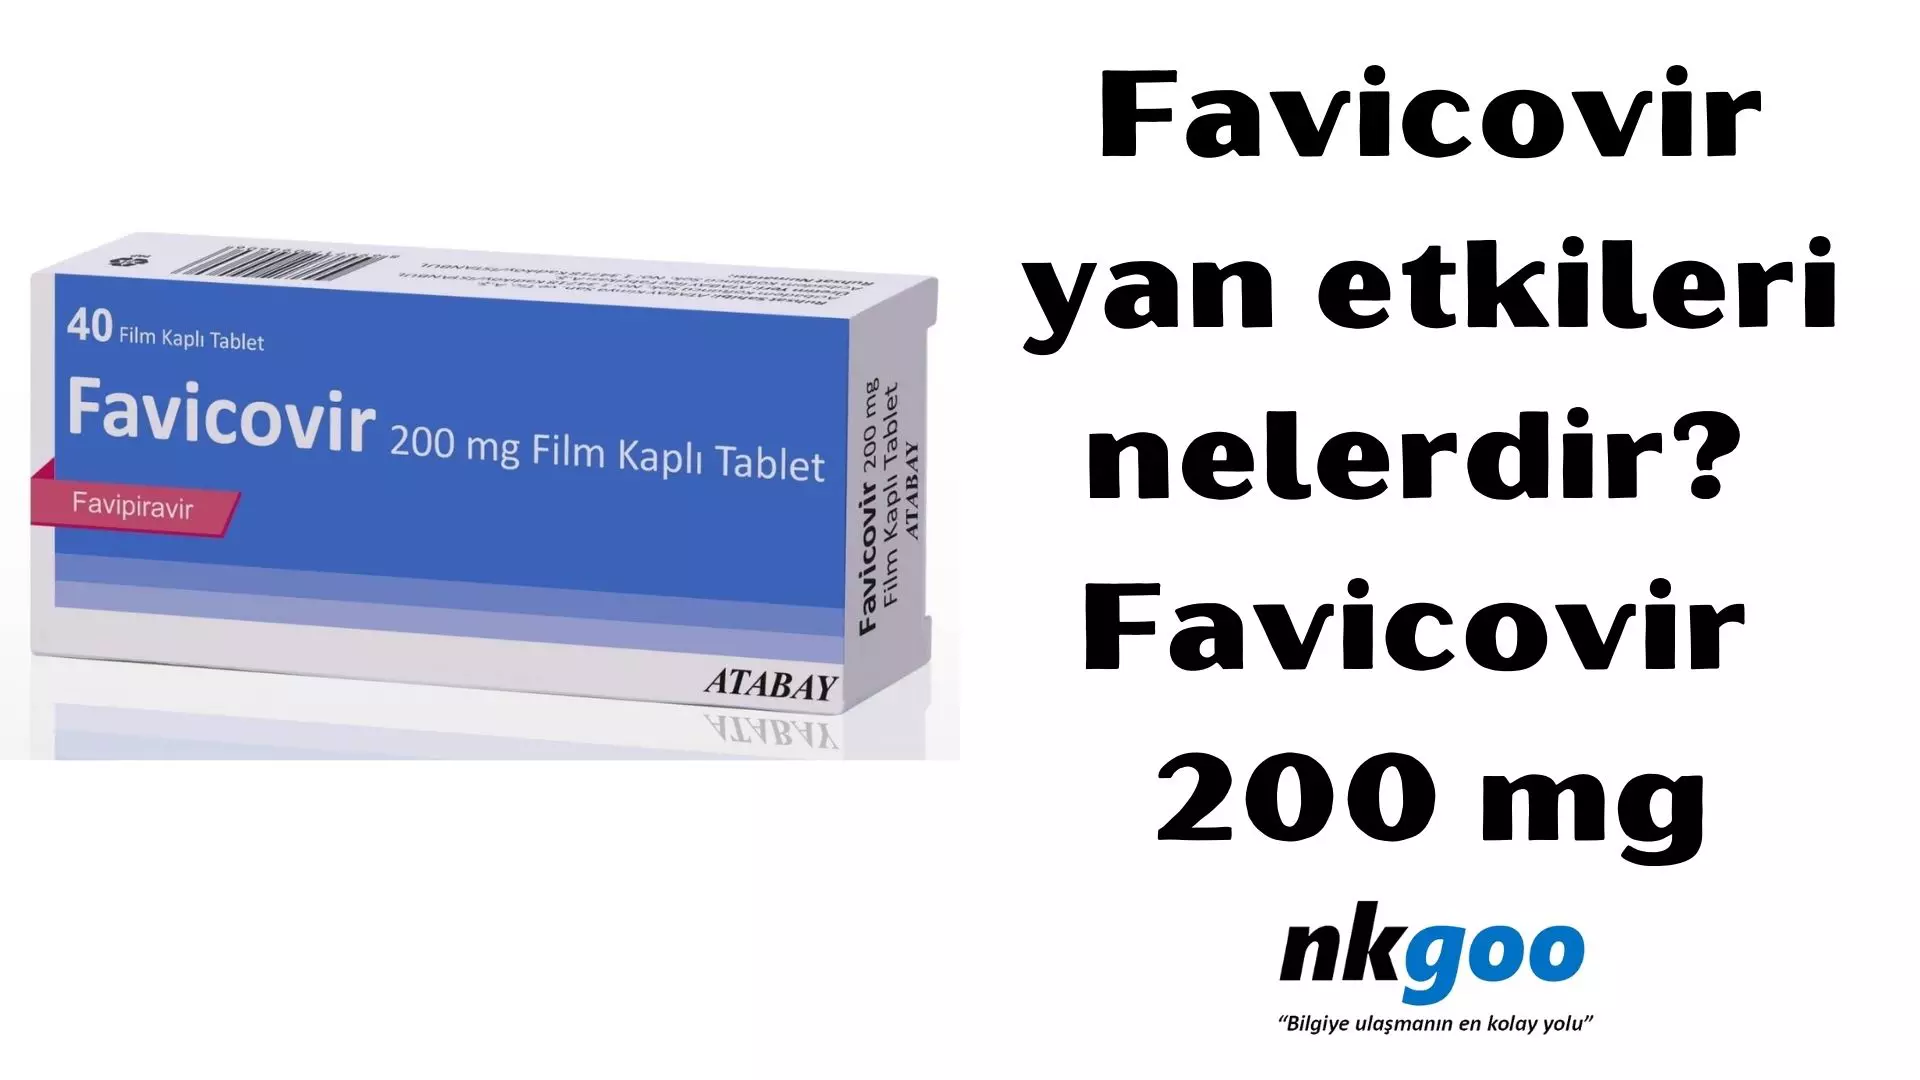 Favicovir yan etkileri nelerdir? Favicovir 200 mg